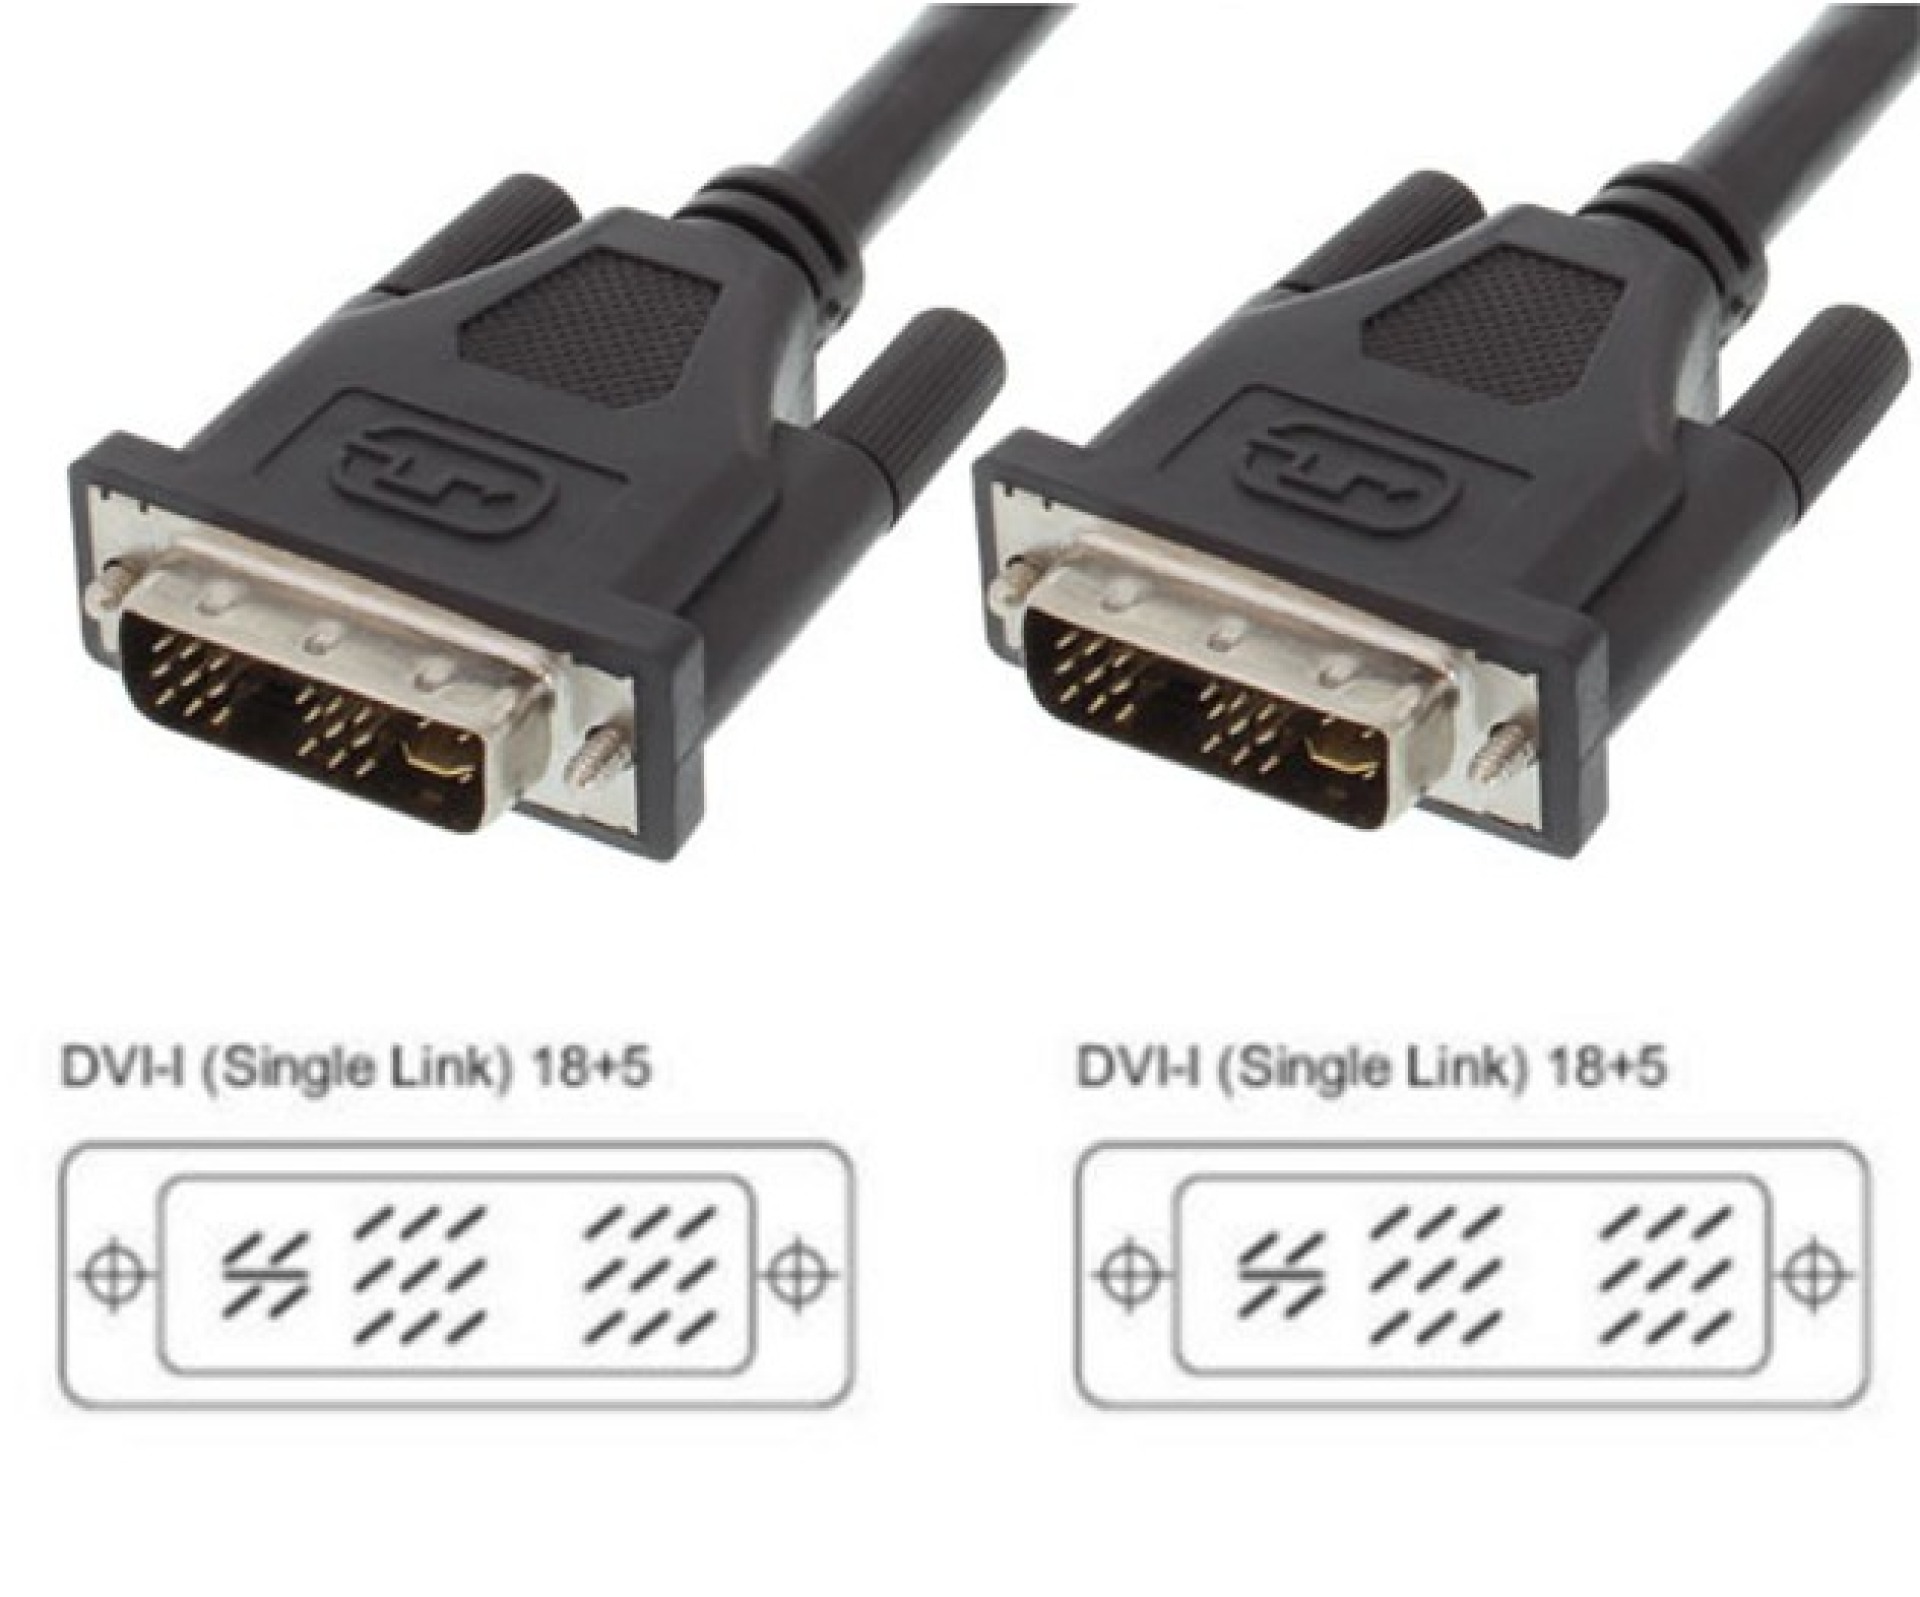 DVI-I 18+5 Single Link, Anschlusskabel Stecker/Stecker, Analog / Digital, 1,8m